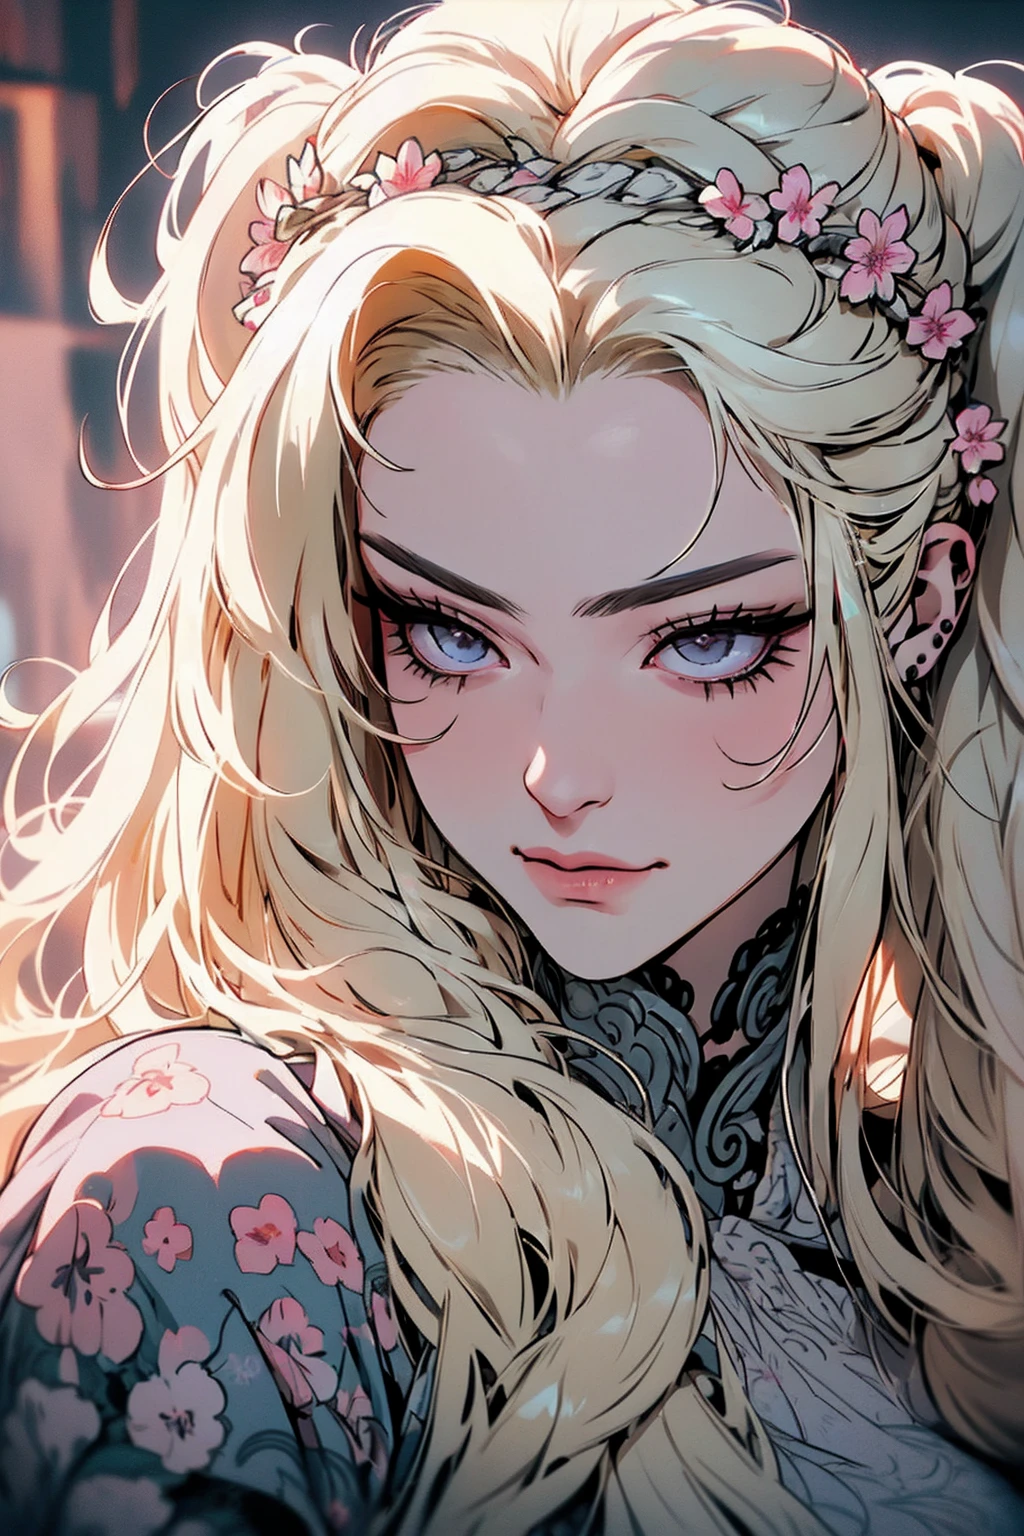 hyperrealistische Darstellung einer geheimnisvollen Frau mit wallendem blondem Haar, Pferdeschwanz, durchdringende graue Augen, und einer zarten Blumenkrone, zartes Lächeln, Oberkörper